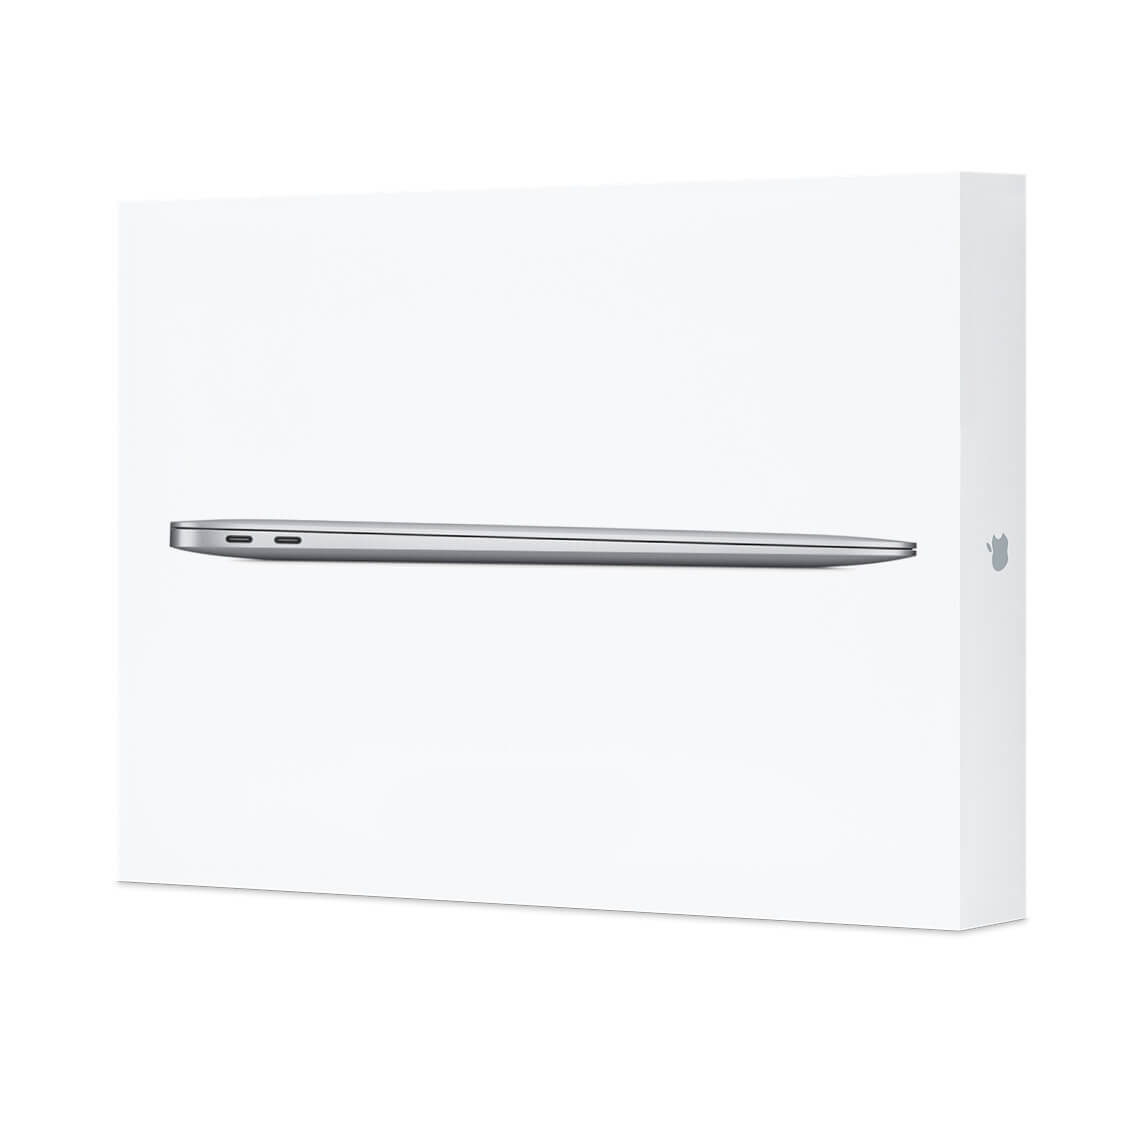 MacBook Air M1 Box